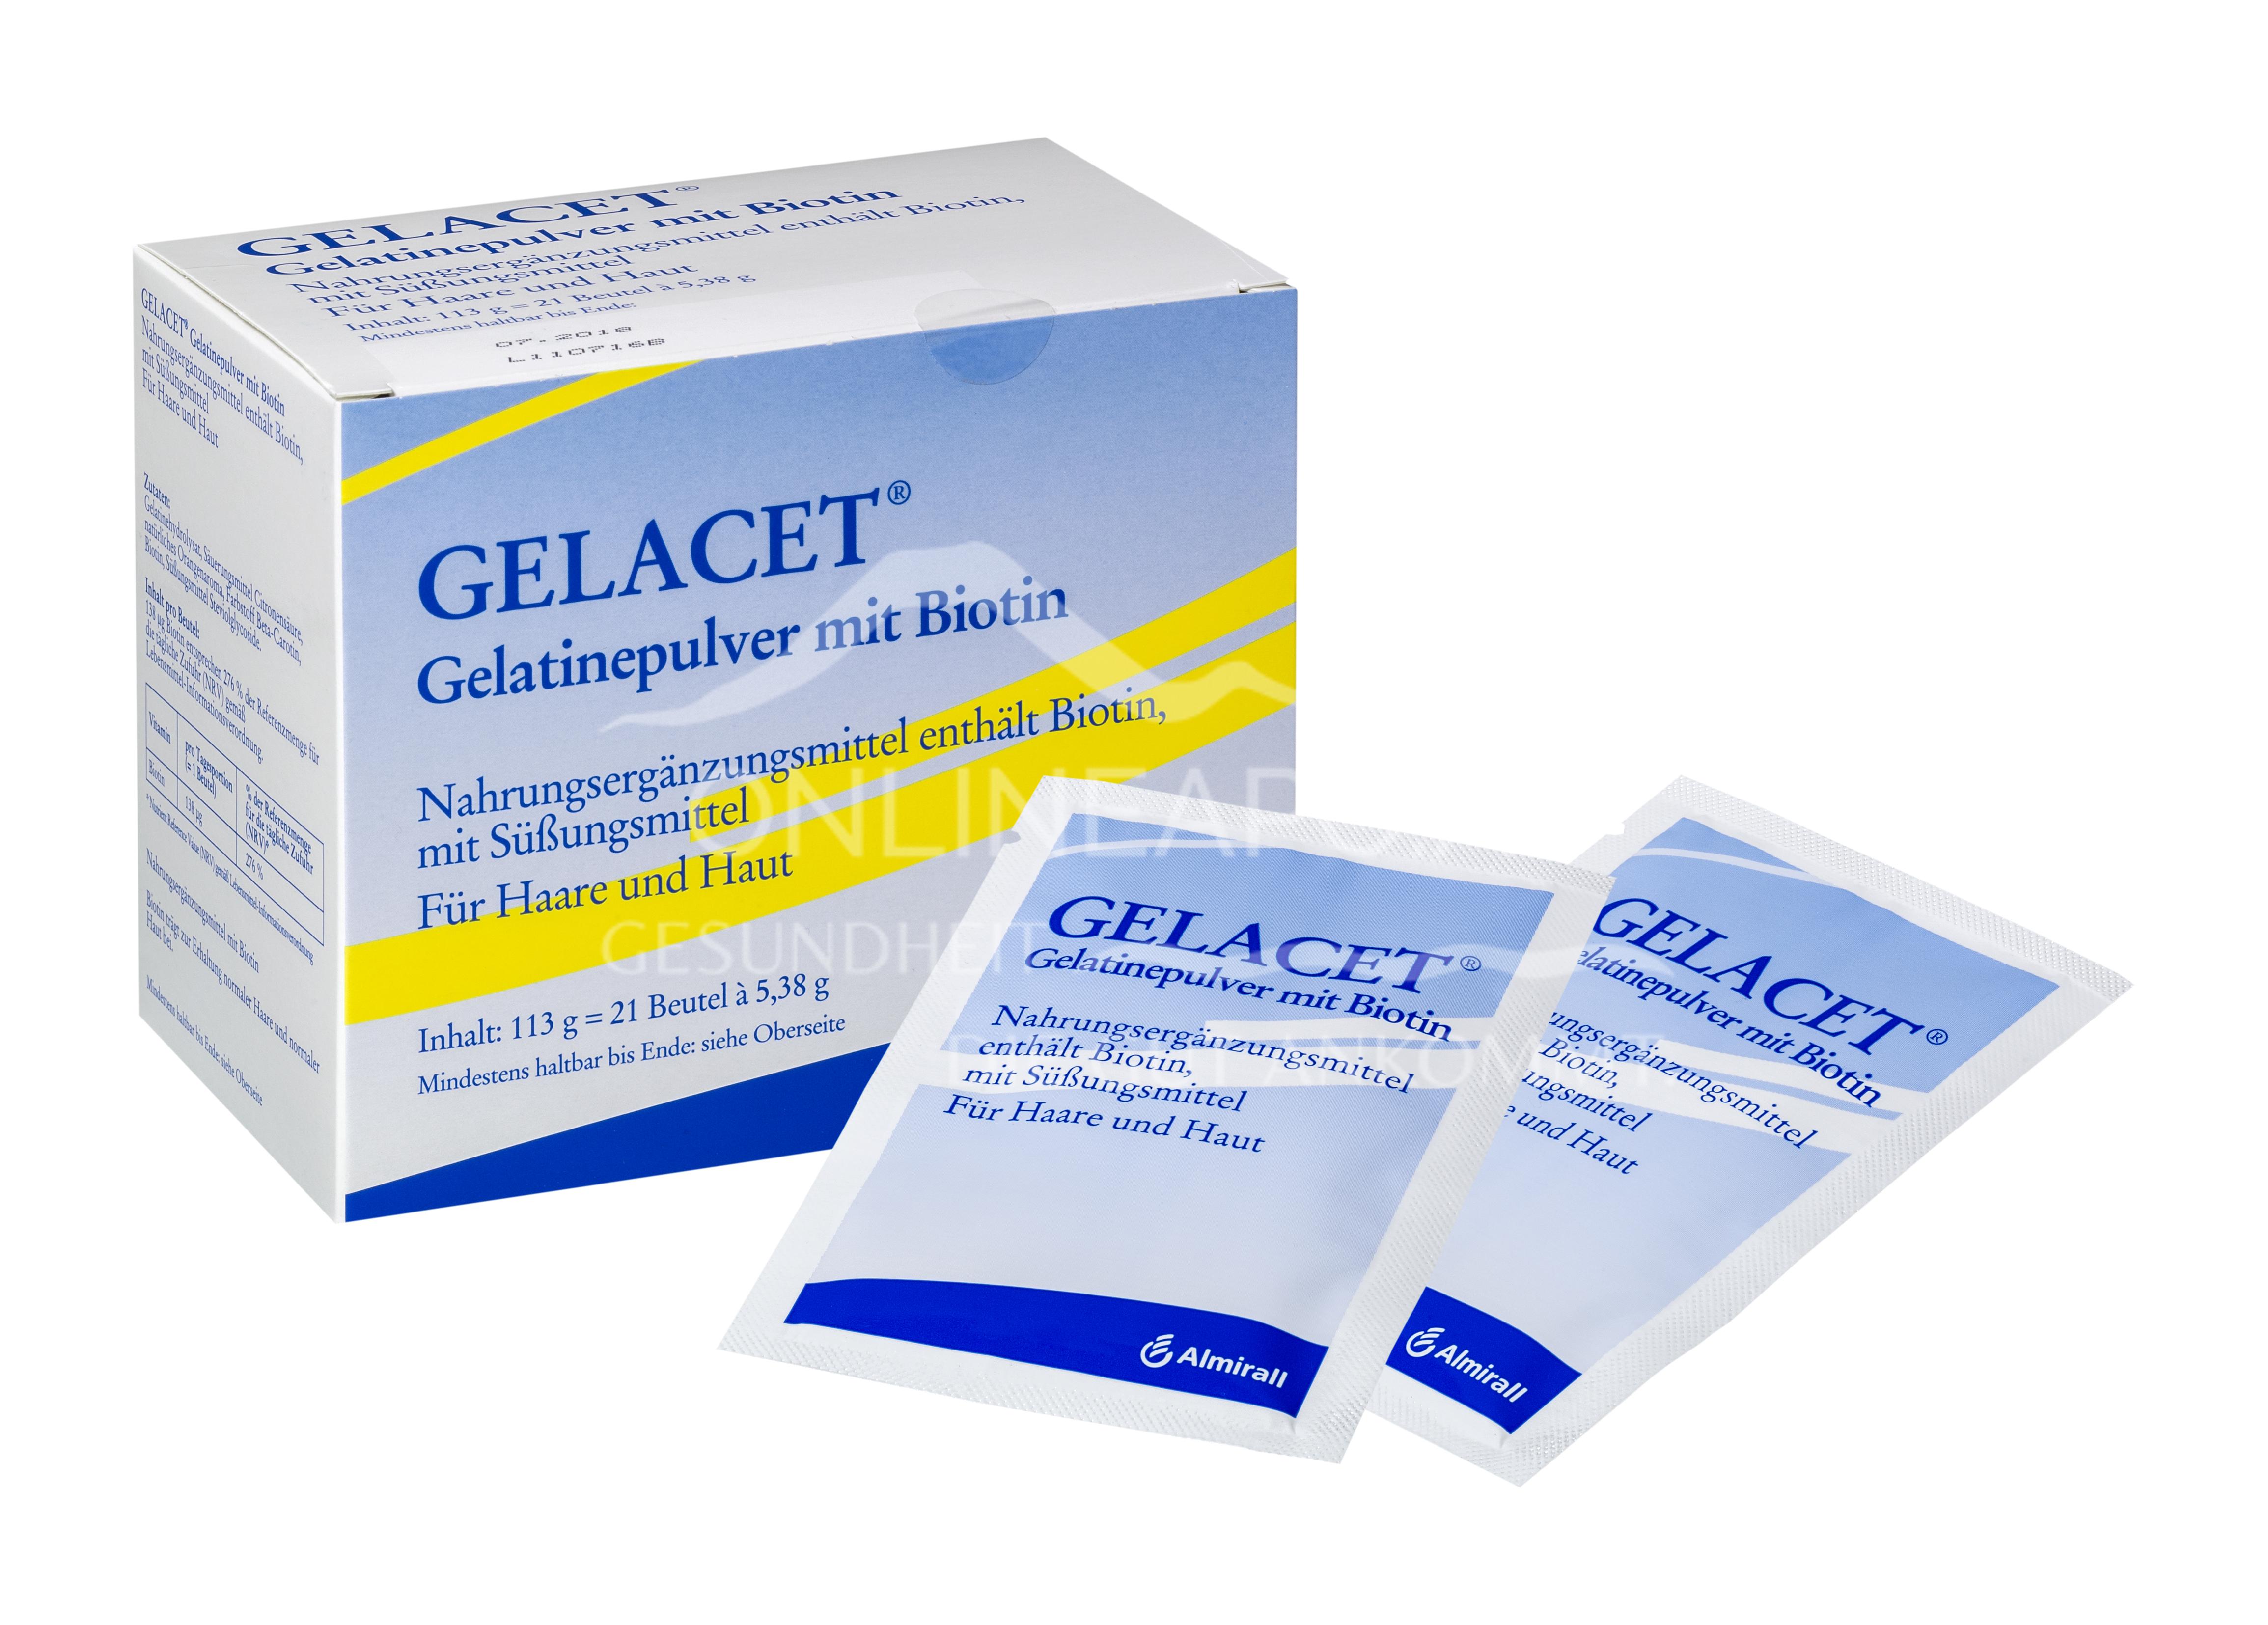 GELACET® Gelatinepulver mit Biotin 21 x 5,38 g